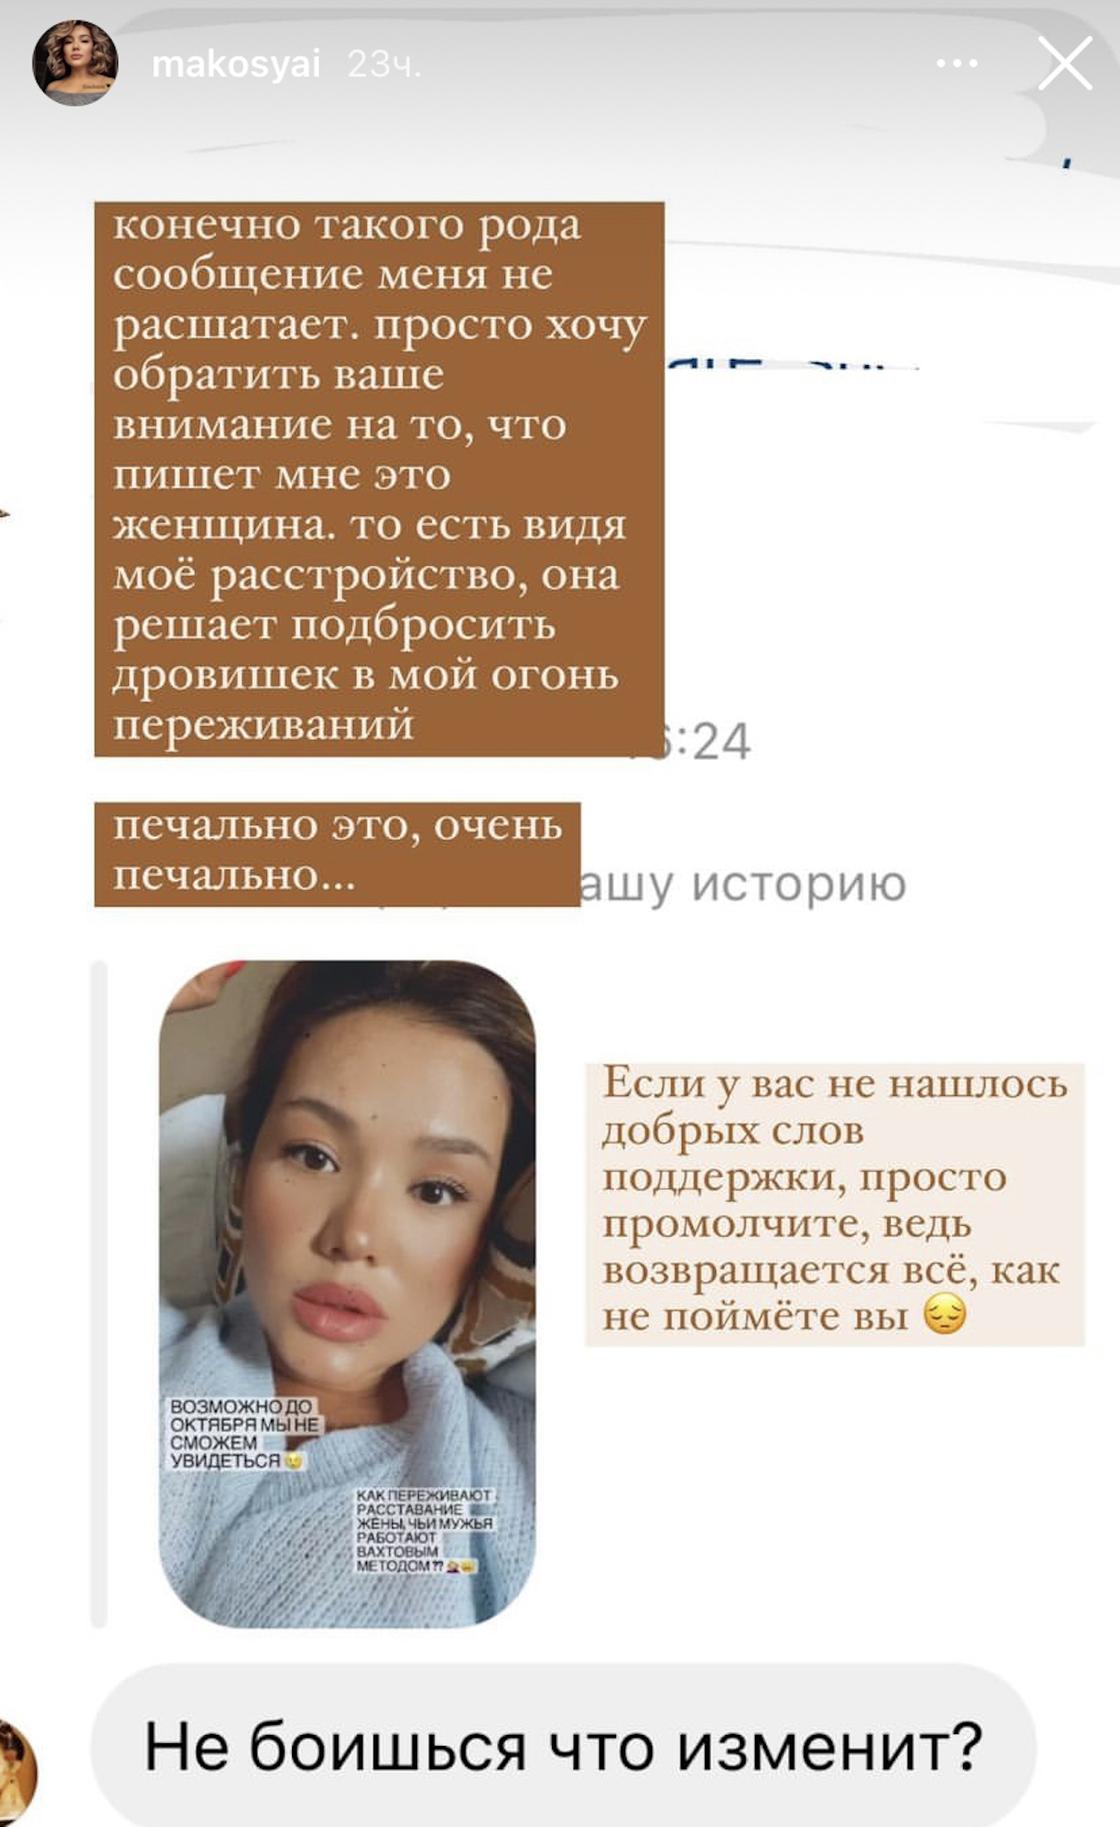 Сторис Макпал Исабековой